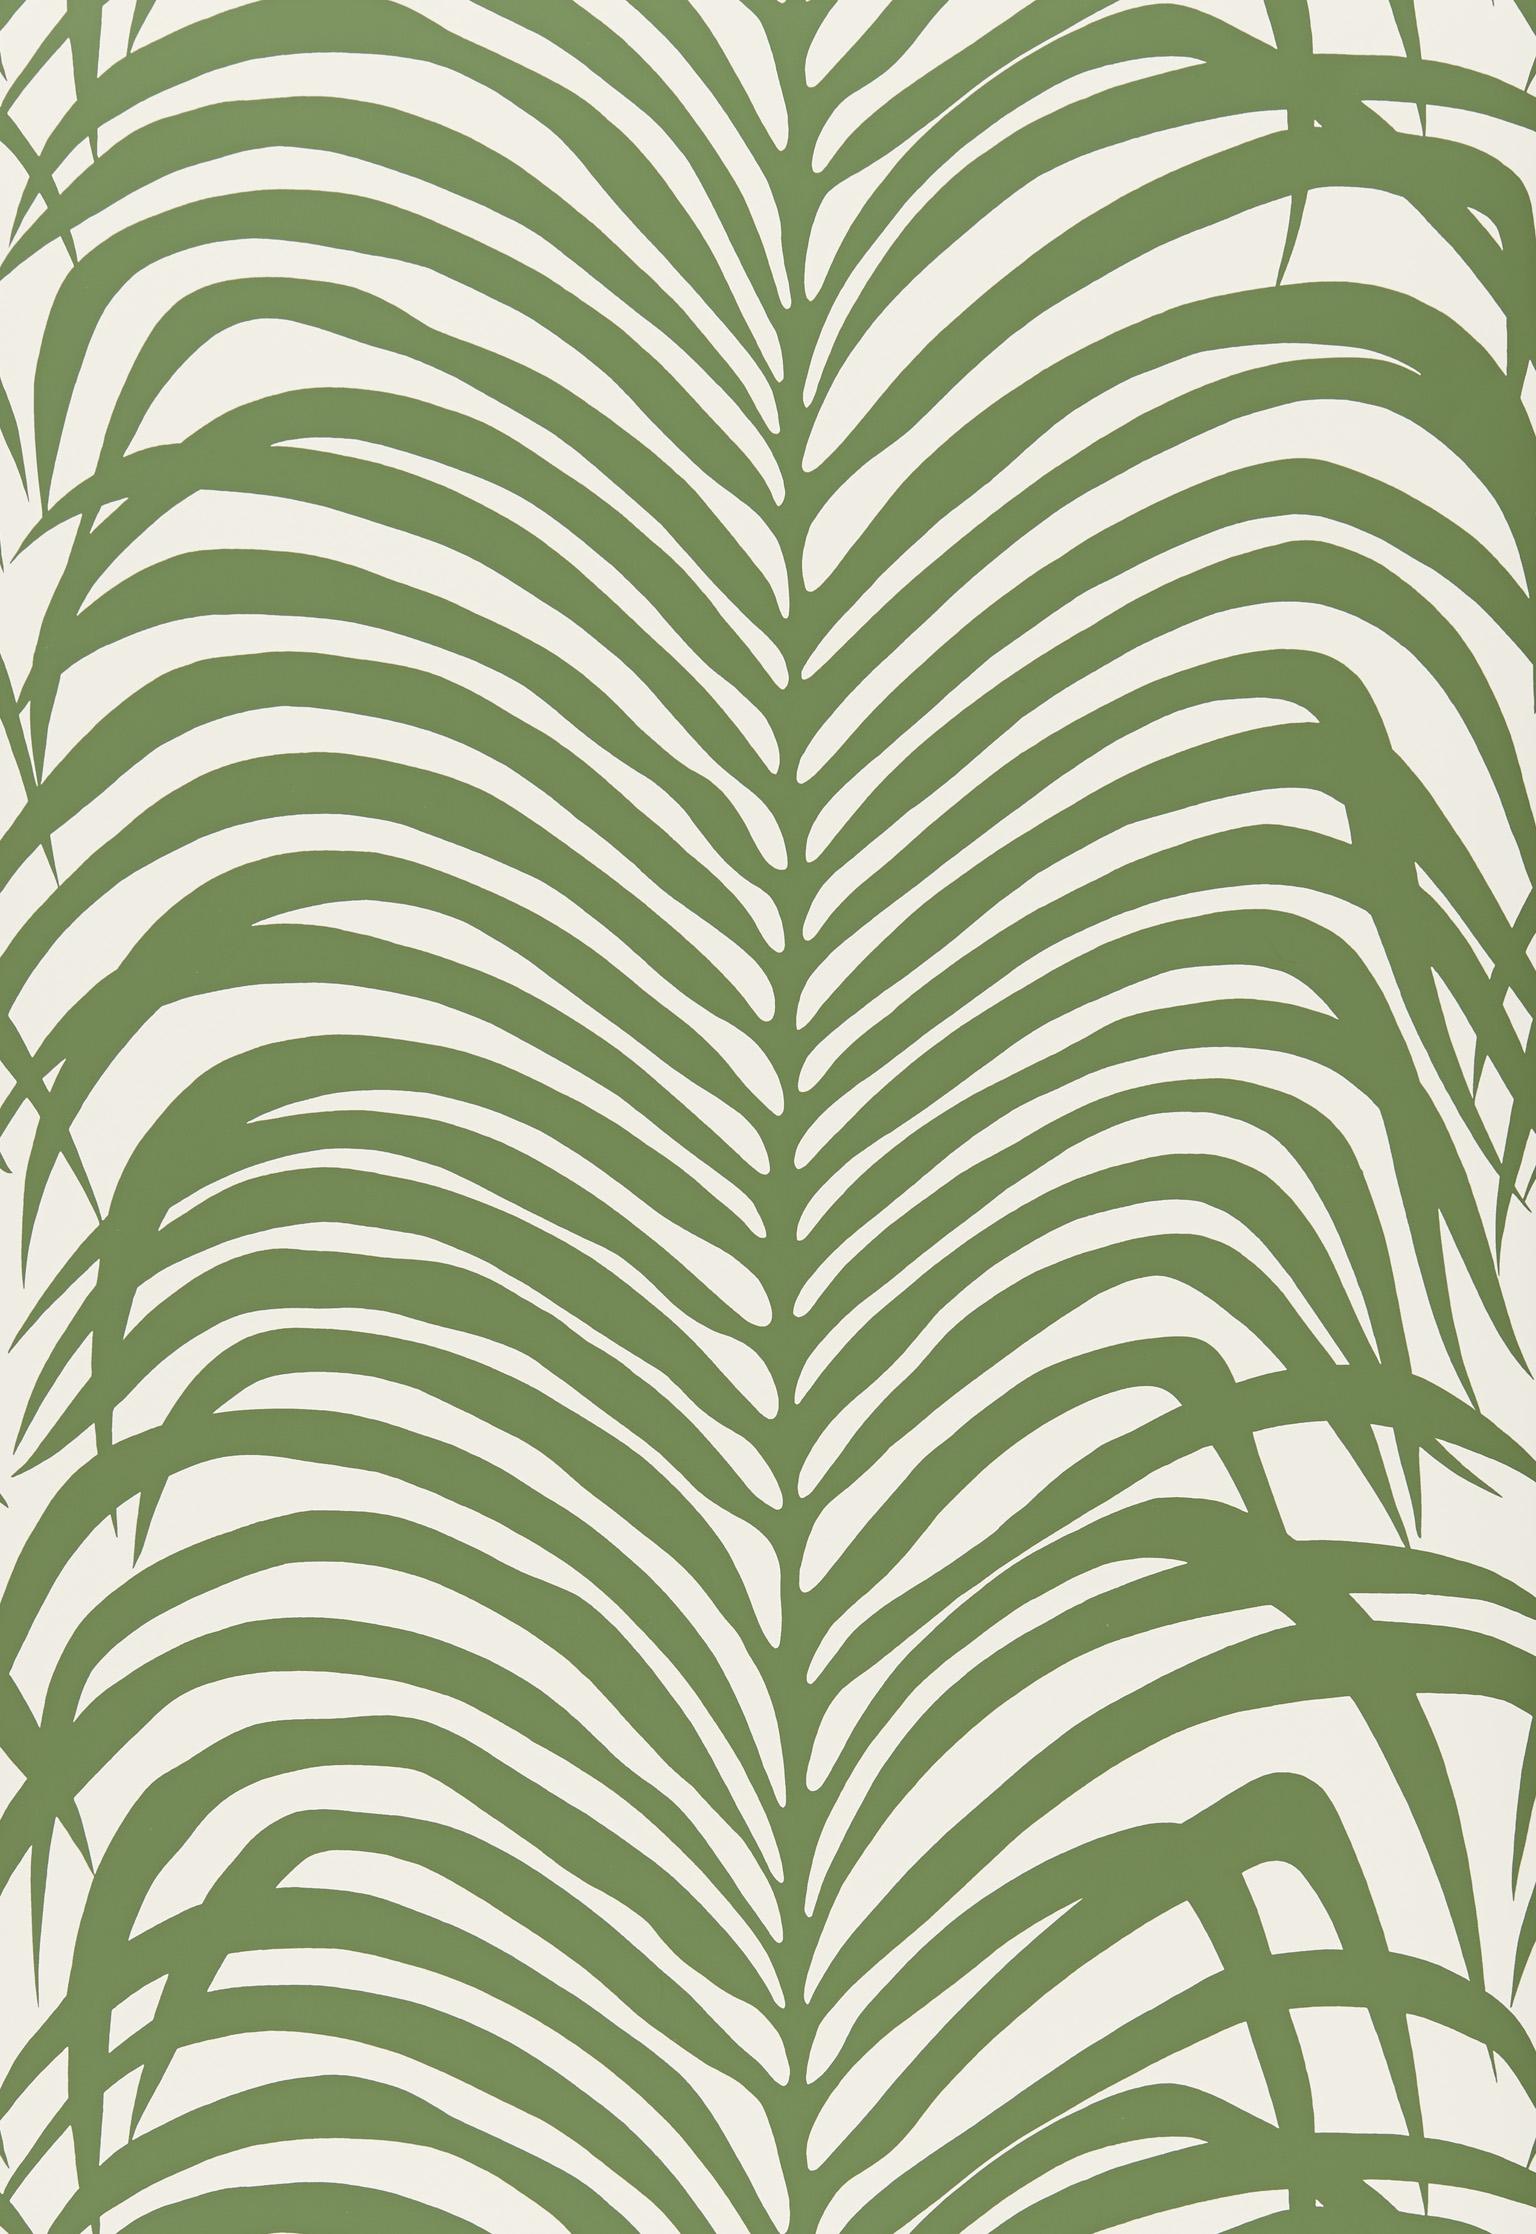 Dieses wilde und wunderbare Muster, das an Zebrastreifen und tropische Palmblätter erinnert, ist als Stoff und Wandbelag erhältlich.

Seit der Gründung von Schumacher im Jahr 1889 ist unser Familienunternehmen ein Synonym für Stil, Geschmack und